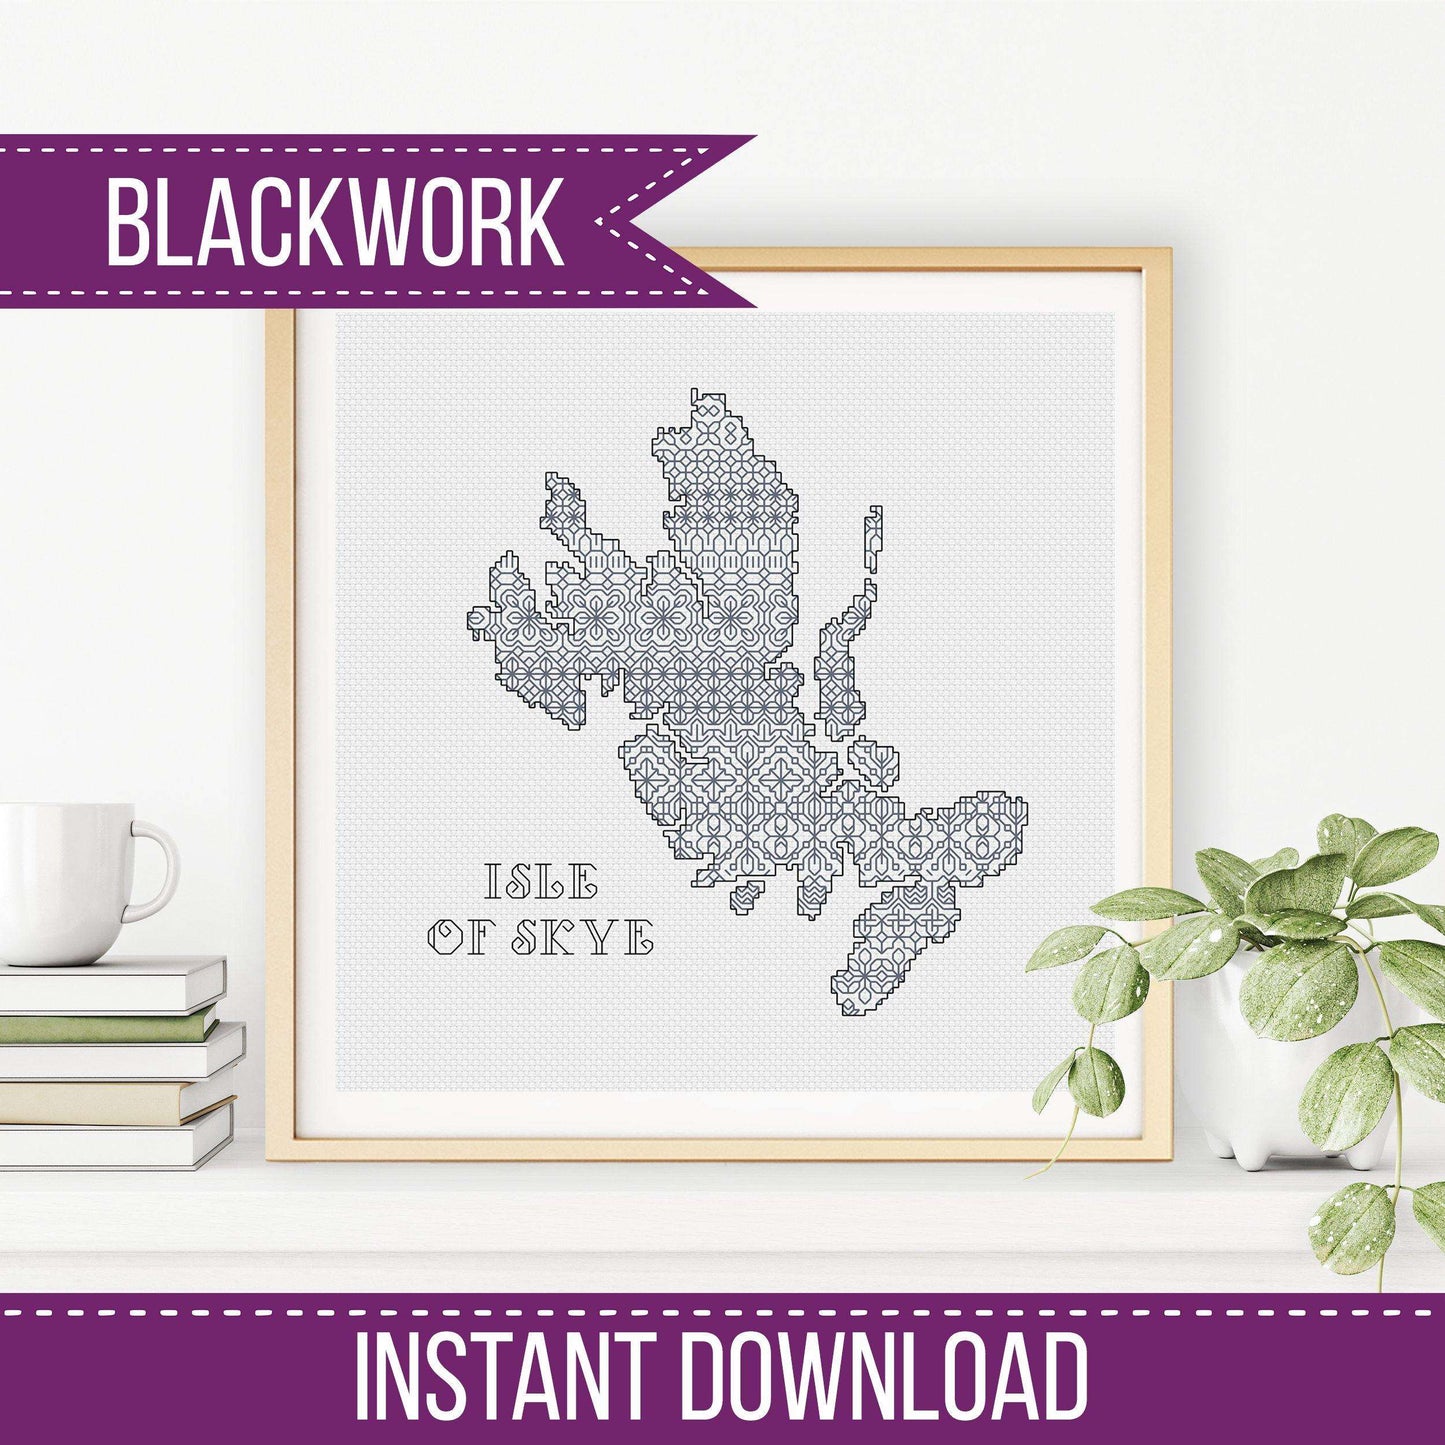 Isle of Skye Blackwork - Blackwork Patterns & Cross Stitch by Peppermint Purple